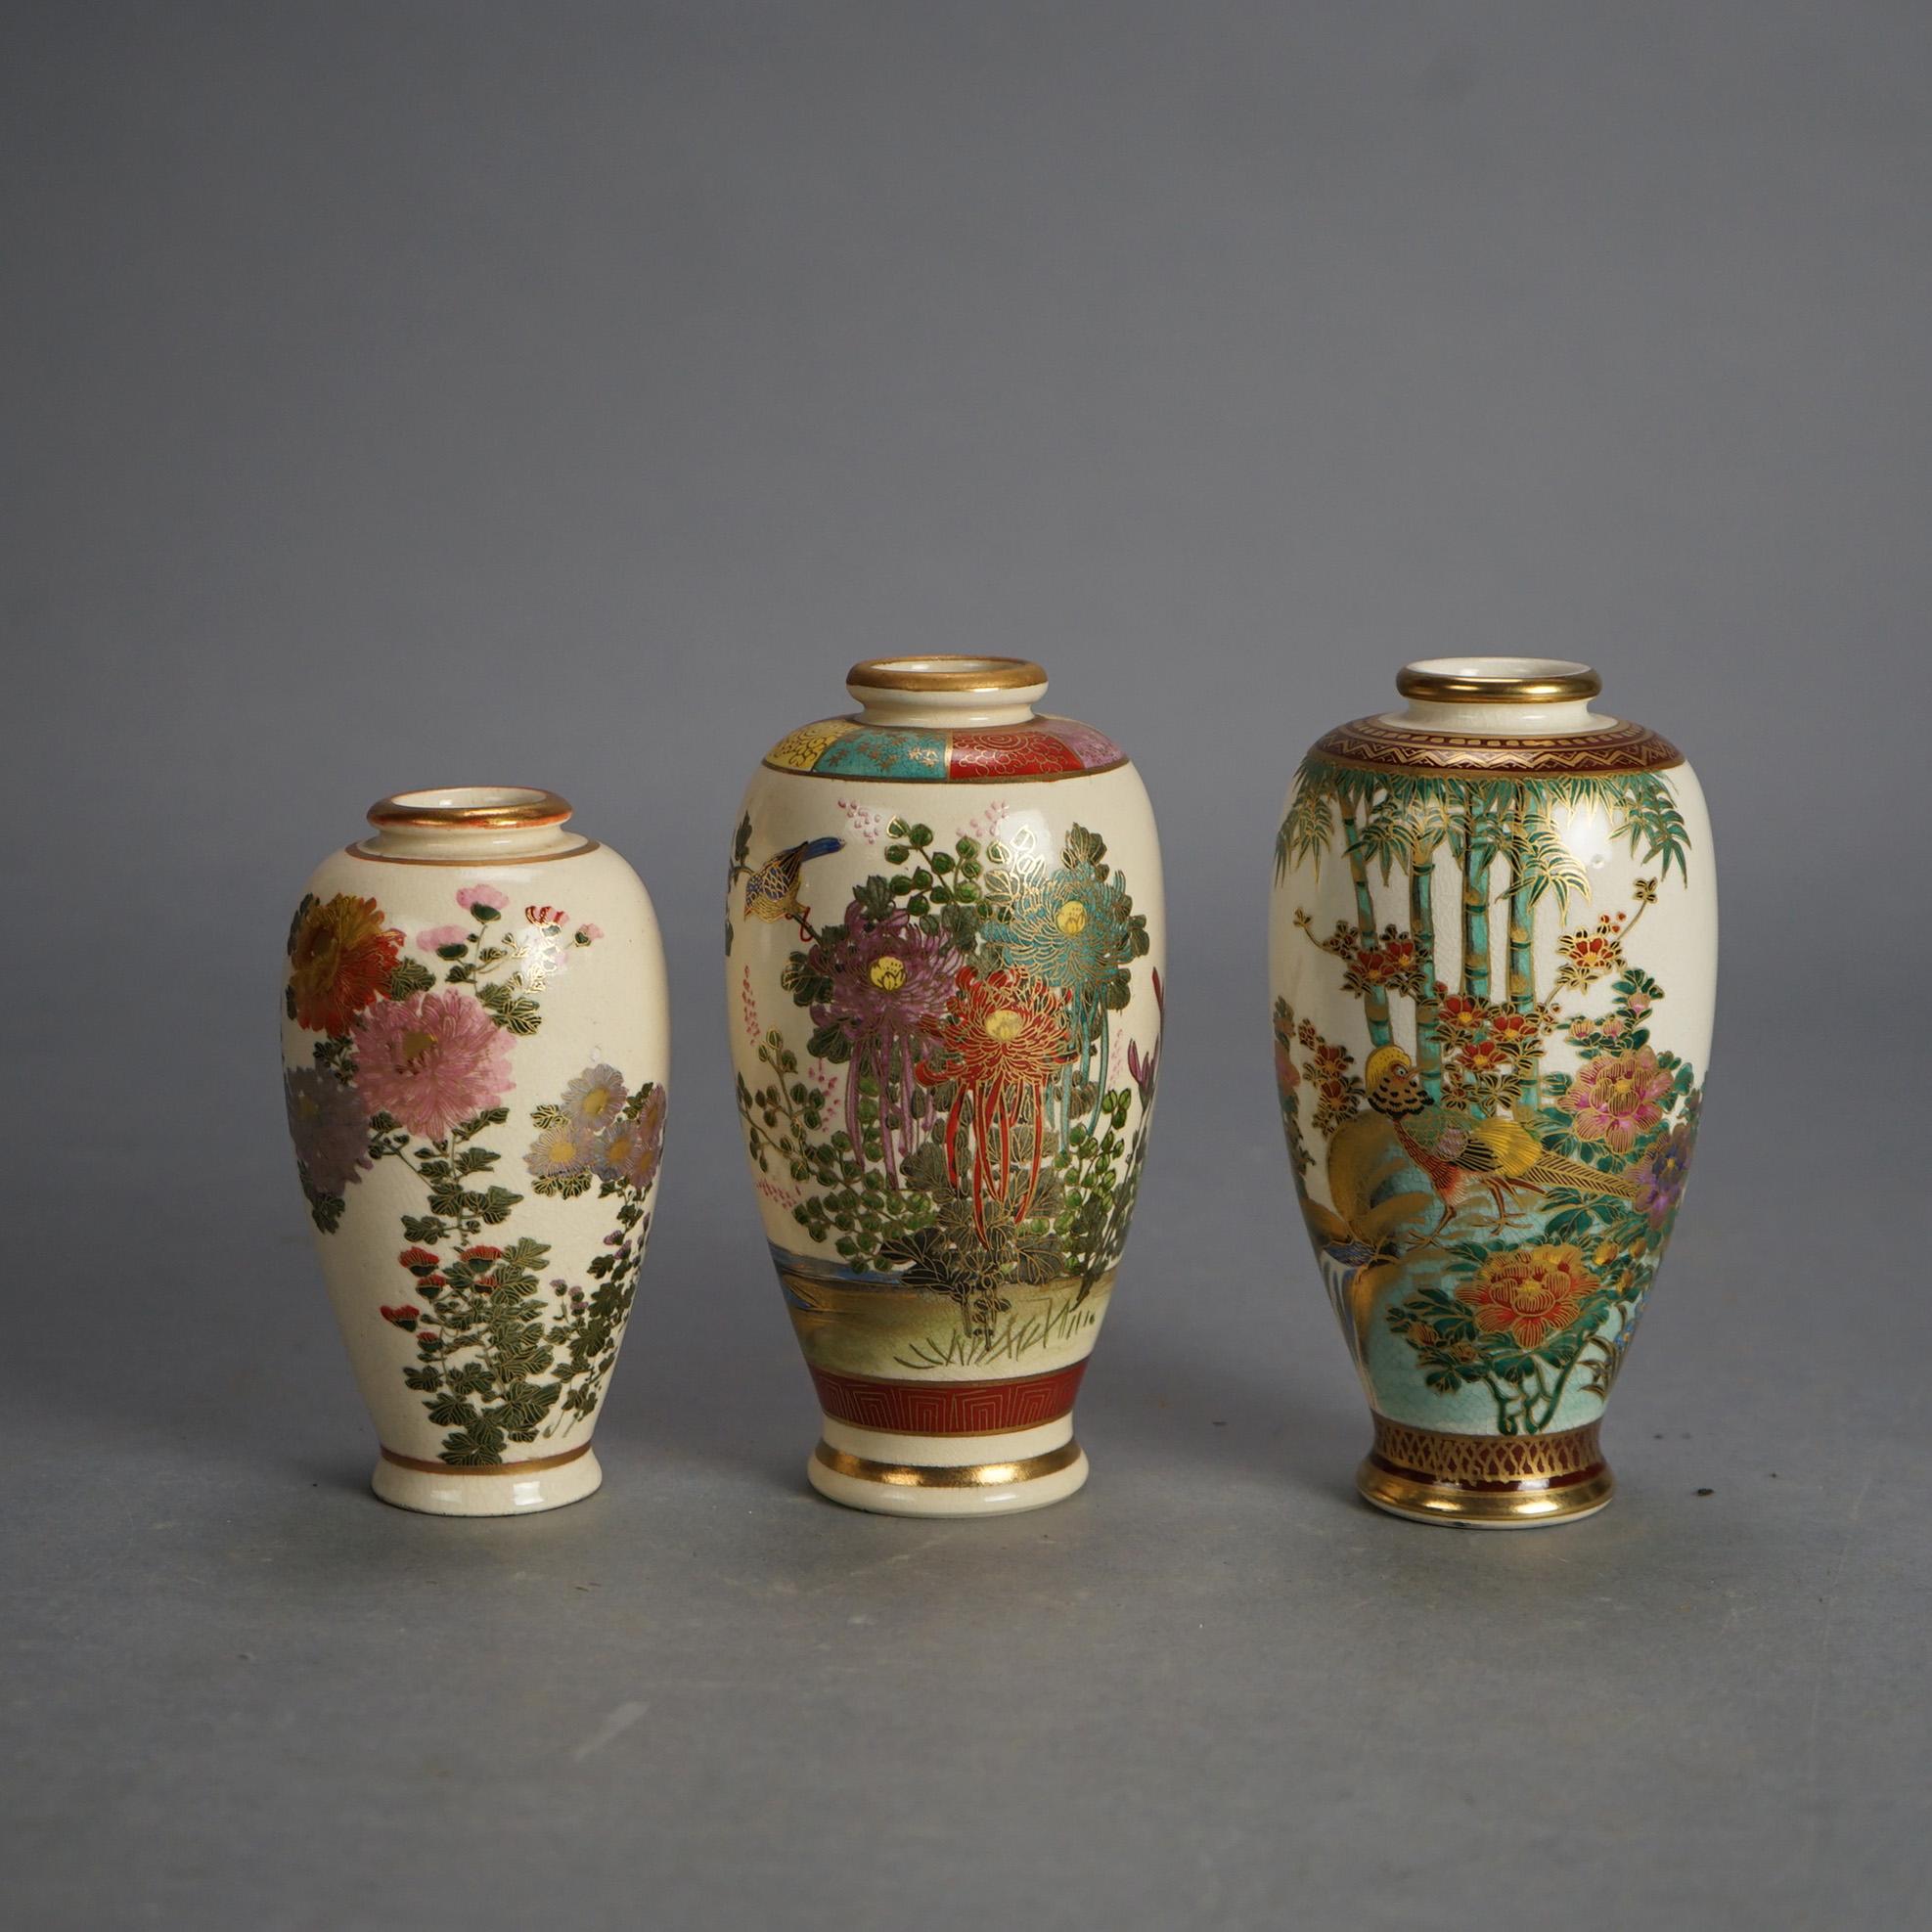 Drei antike japanische Satsuma Porzellanvasen mit Gartenblumen & Vergoldung C1920

Maße - 3 